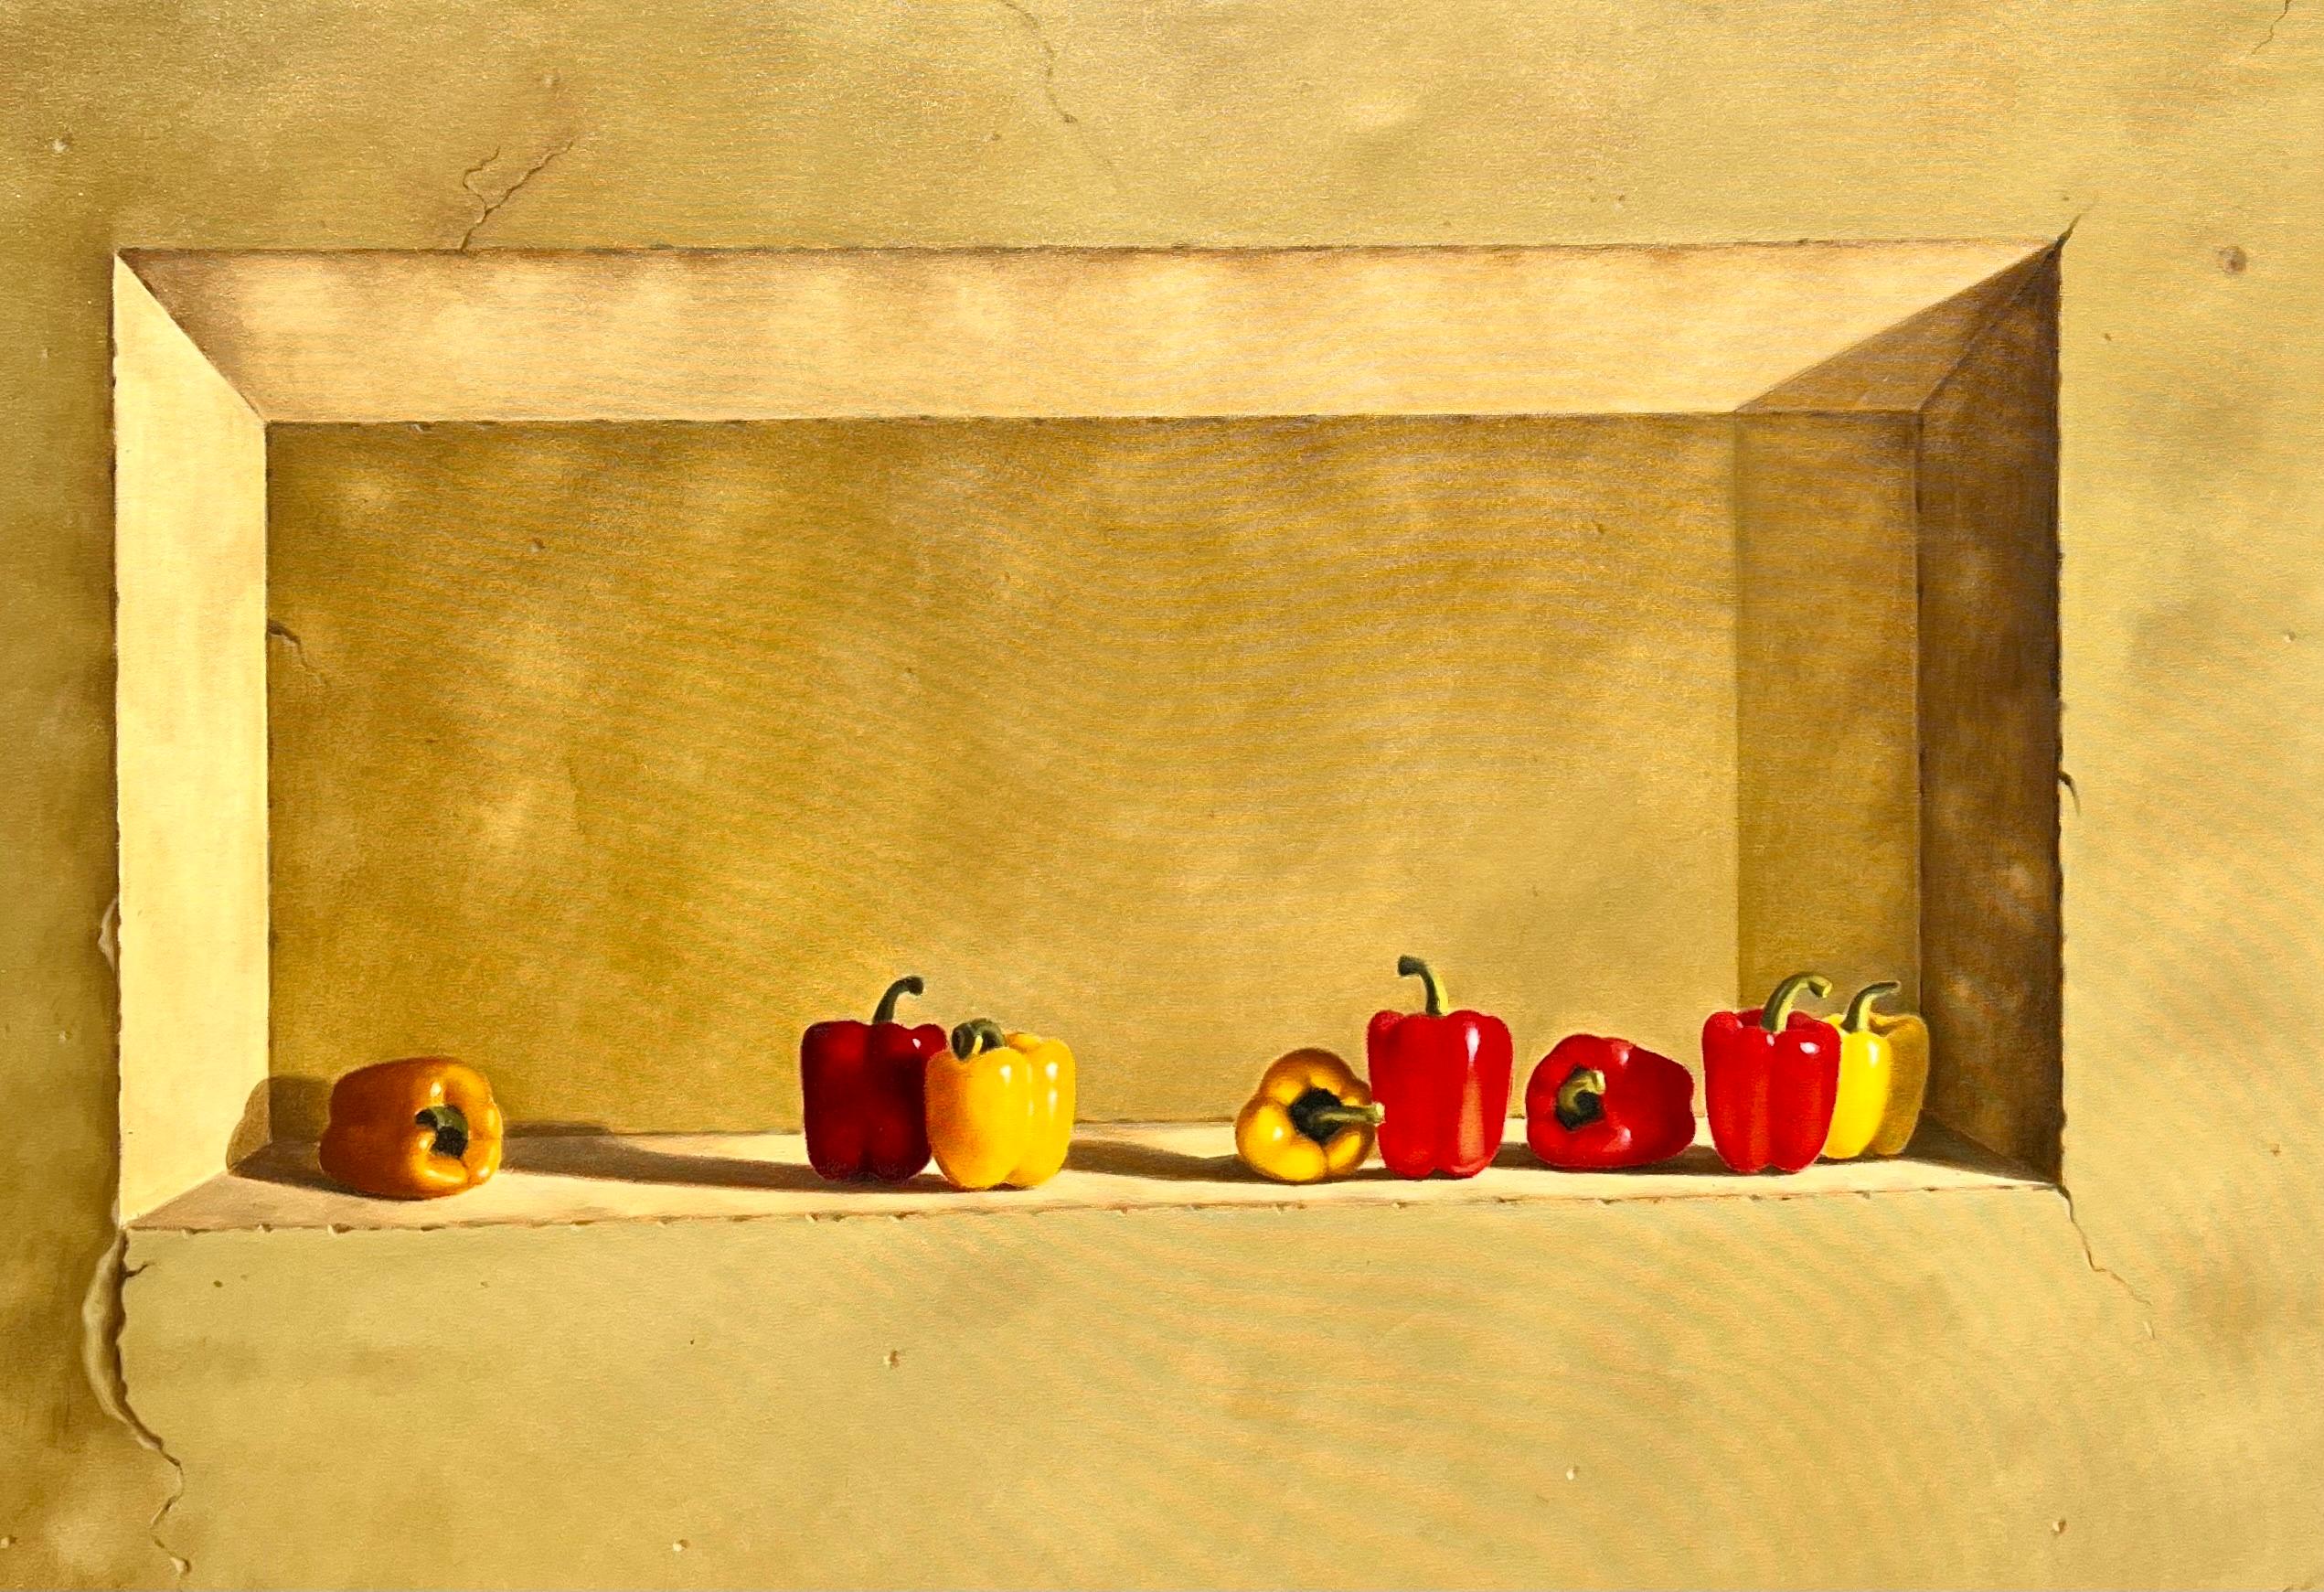 Nature morte hyperréaliste monumentale de poivrons, 
Signé à la main
Huile sur toile
 48 x 48 in, 58 x 58 in (encadré)
Parfait pour une cuisine, un étalage coloré de poivrons rouges et jaunes sur un faux mur de ferme ou de château craquelé en trompe